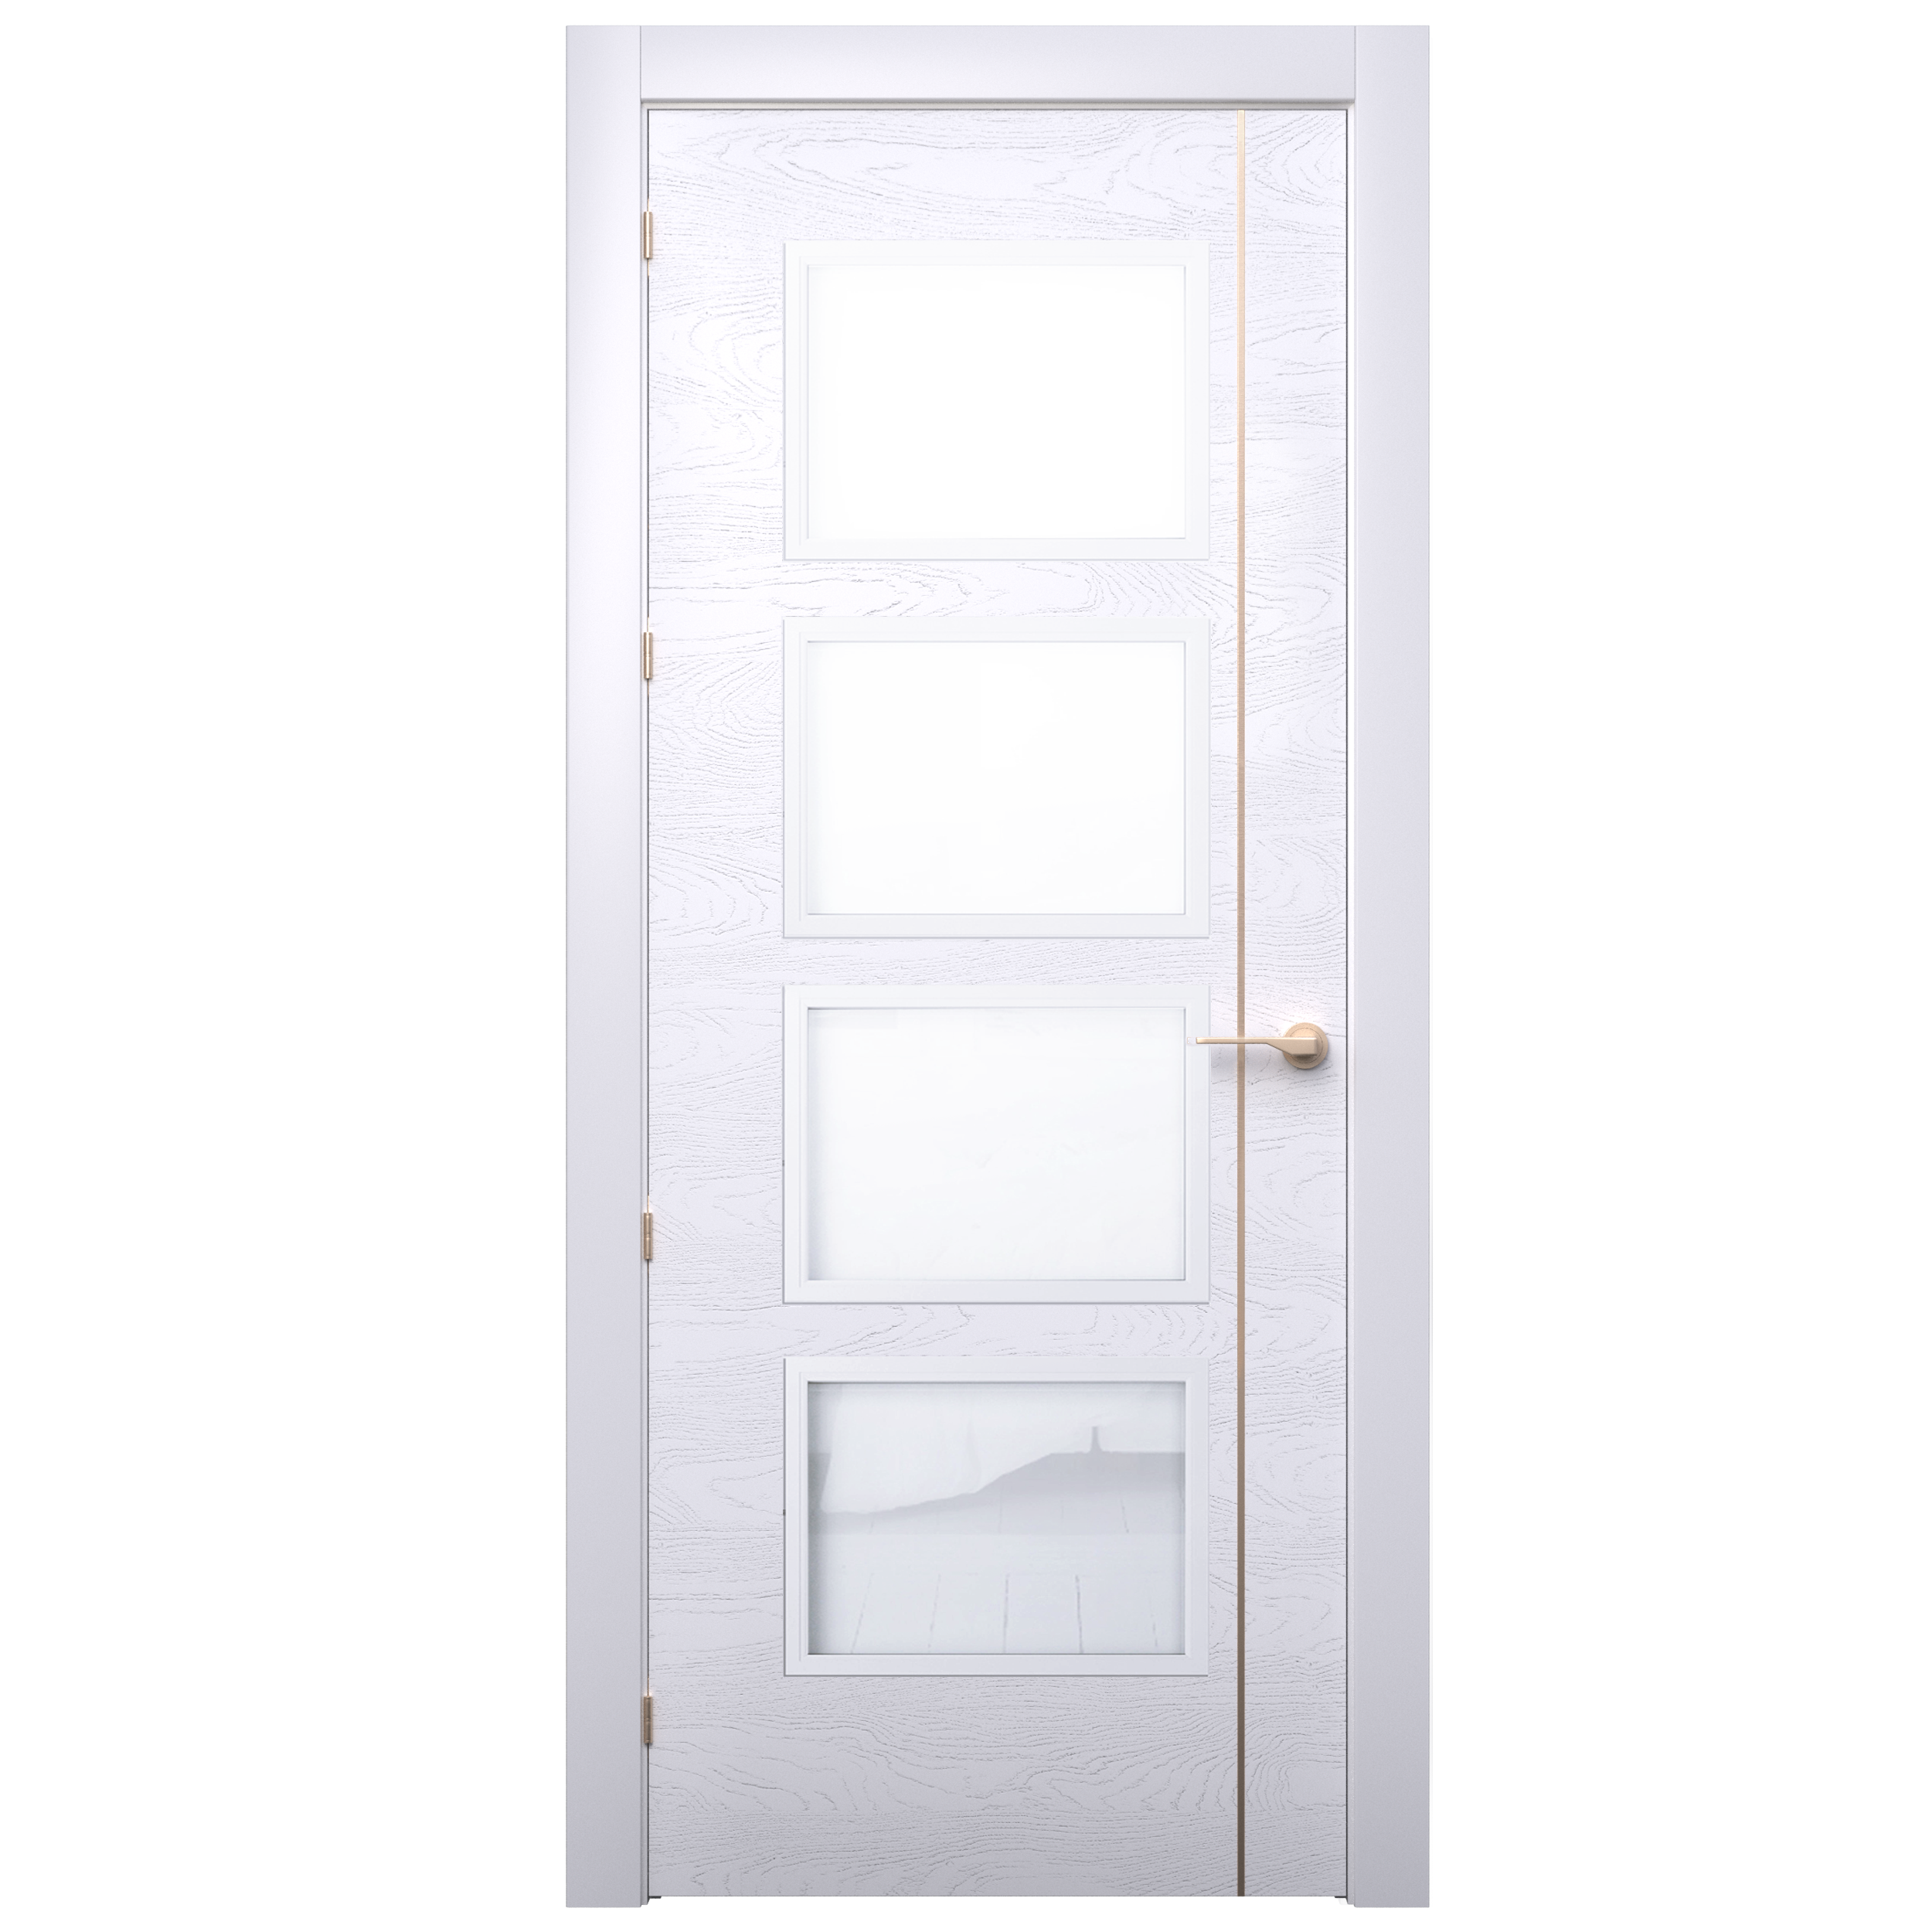 Puerta mencía premium blanco-oro con cristal apertura derecha de 9x72,5 cm